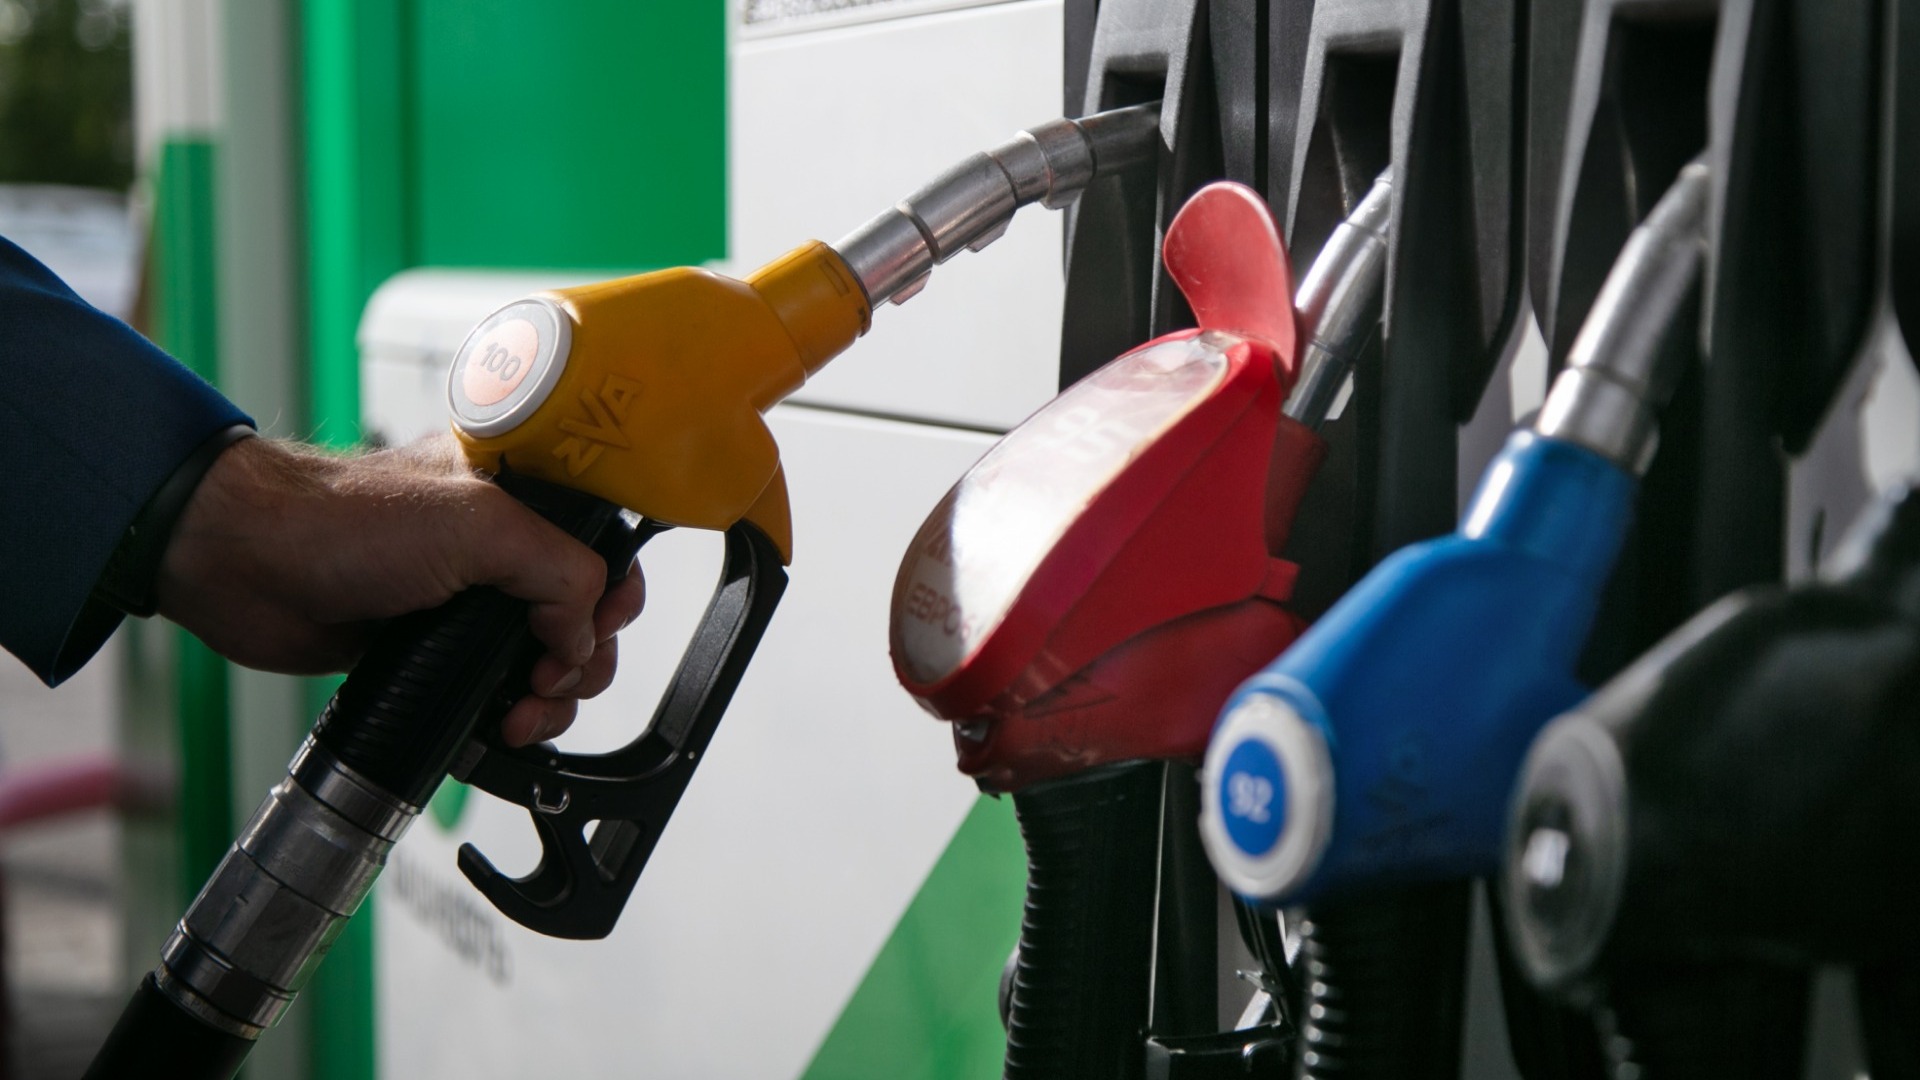 ХМАО и ЯНАО попали в топ-5 регионов по доступности бензина